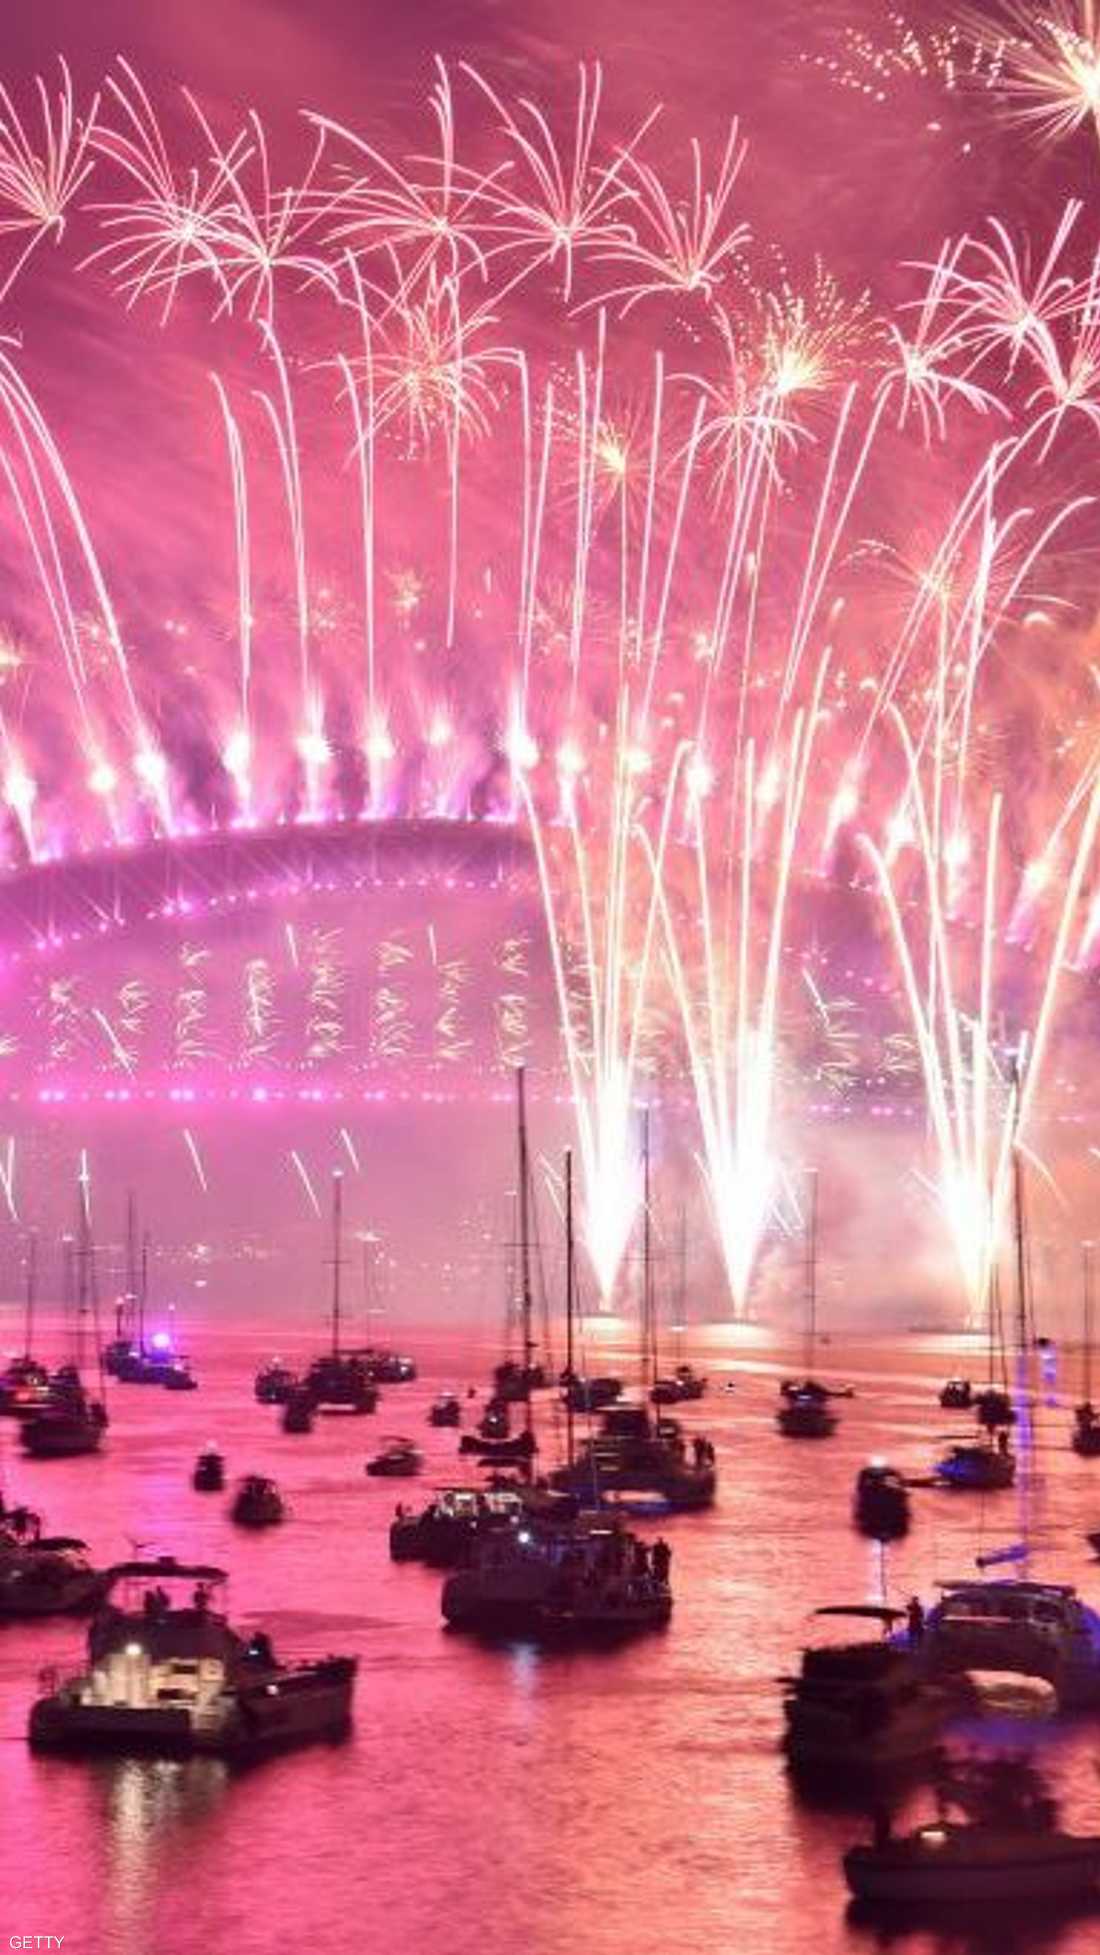 مشهد خلاب للألعاب النارية ويخوت المحتفلين في سيدني بأستراليا